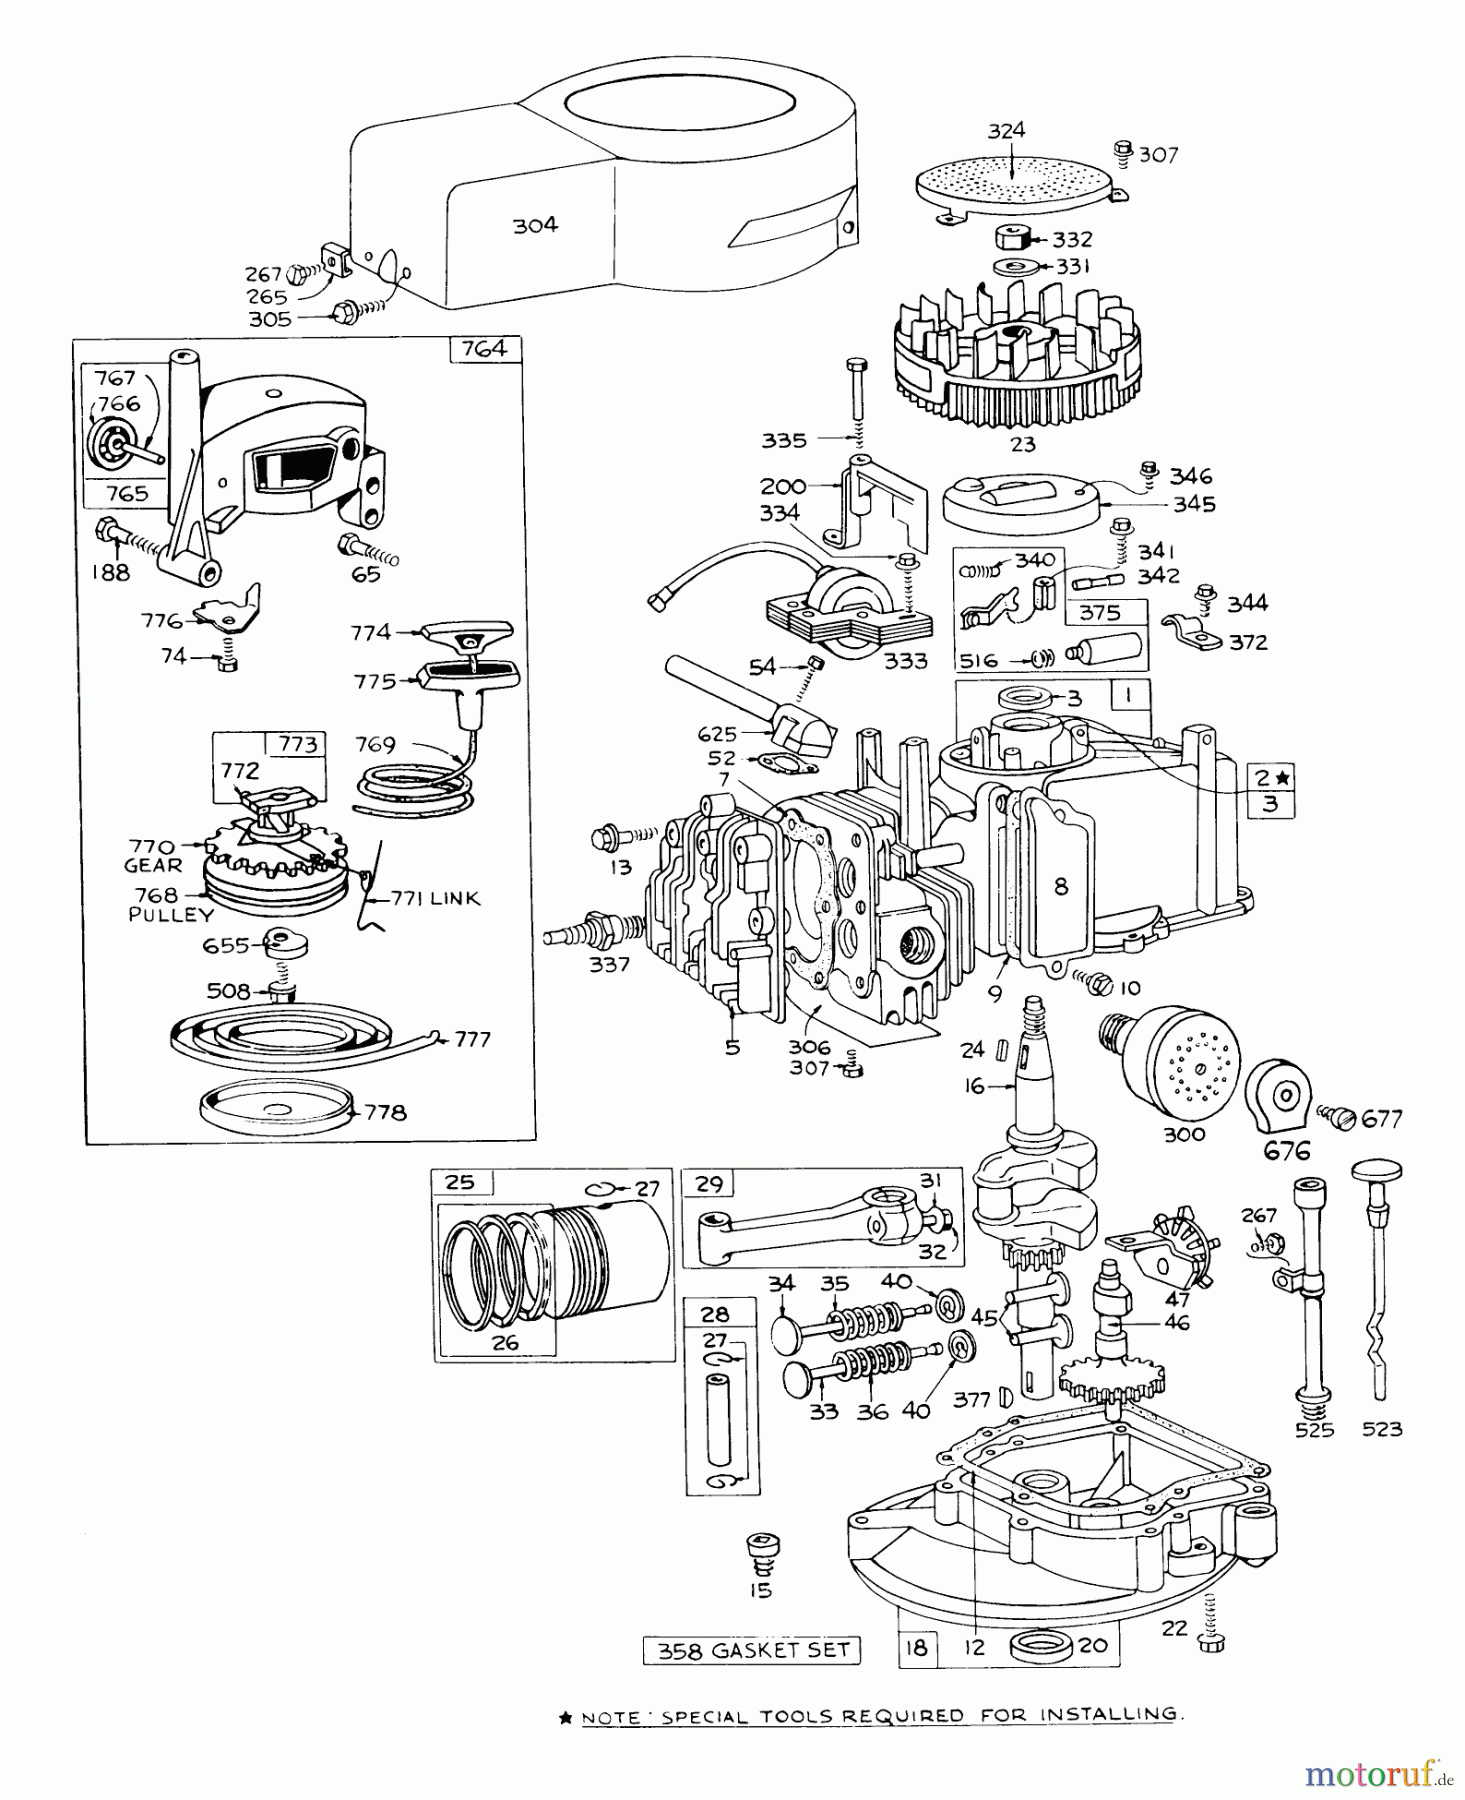  Toro Neu Mowers, Walk-Behind Seite 1 16273 - Toro Whirlwind Lawnmower, 1973 (3000001-3999999) ENGINE BRIGGS & STRATTON - MODEL 92908-1224-01 FOR 21